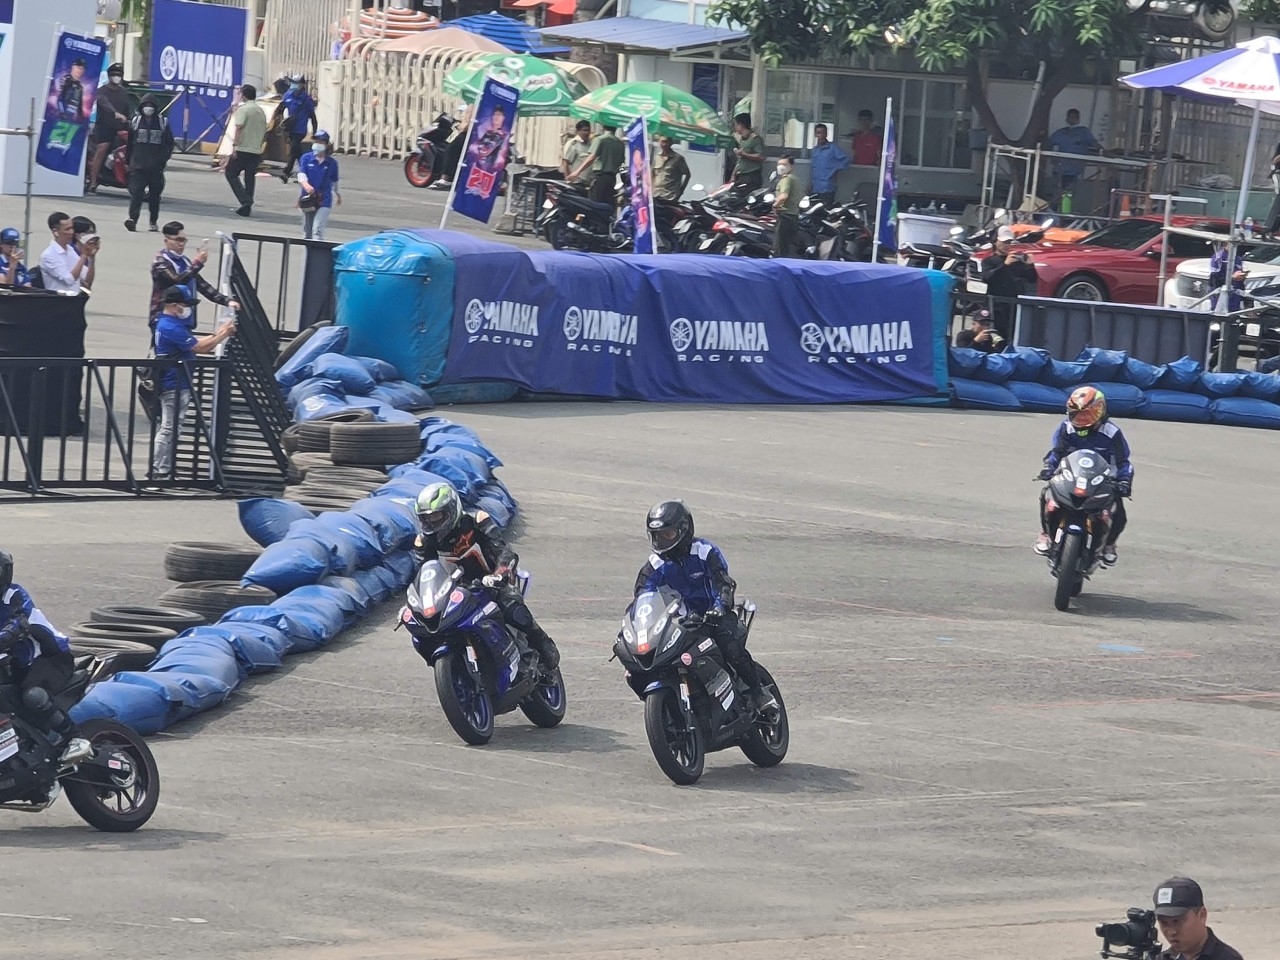 Yamaha Motor Việt Nam khánh thành học viện đào tạo của các tay đua